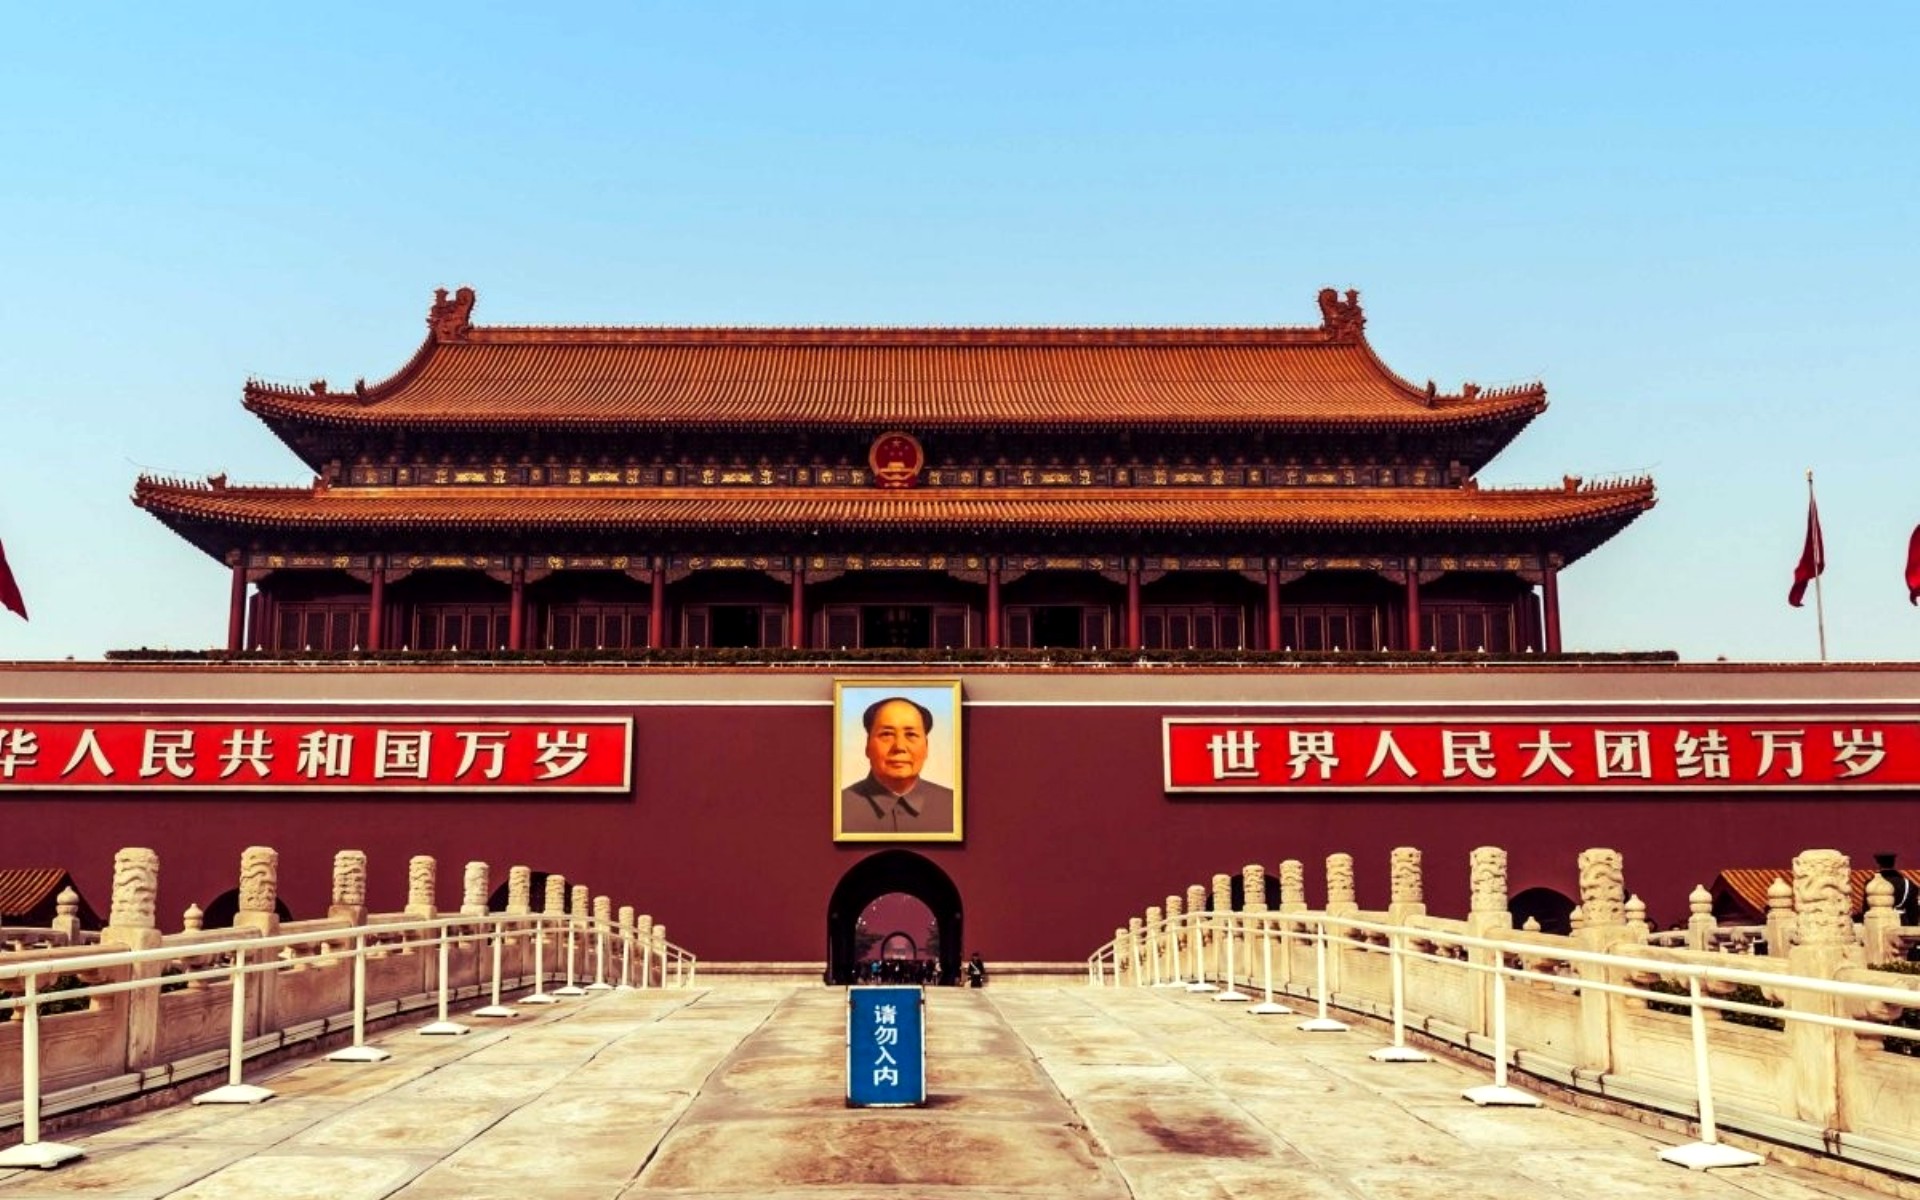 Китайская гробница часы. Мавзолей Мао Цзэдуна Пекин. Дворец Гугун Запретный город Китай Пекин. Площадь Тяньаньмэнь в Пекине. Мавзолей Мао Цзэдуна площадь Тяньаньмэнь.